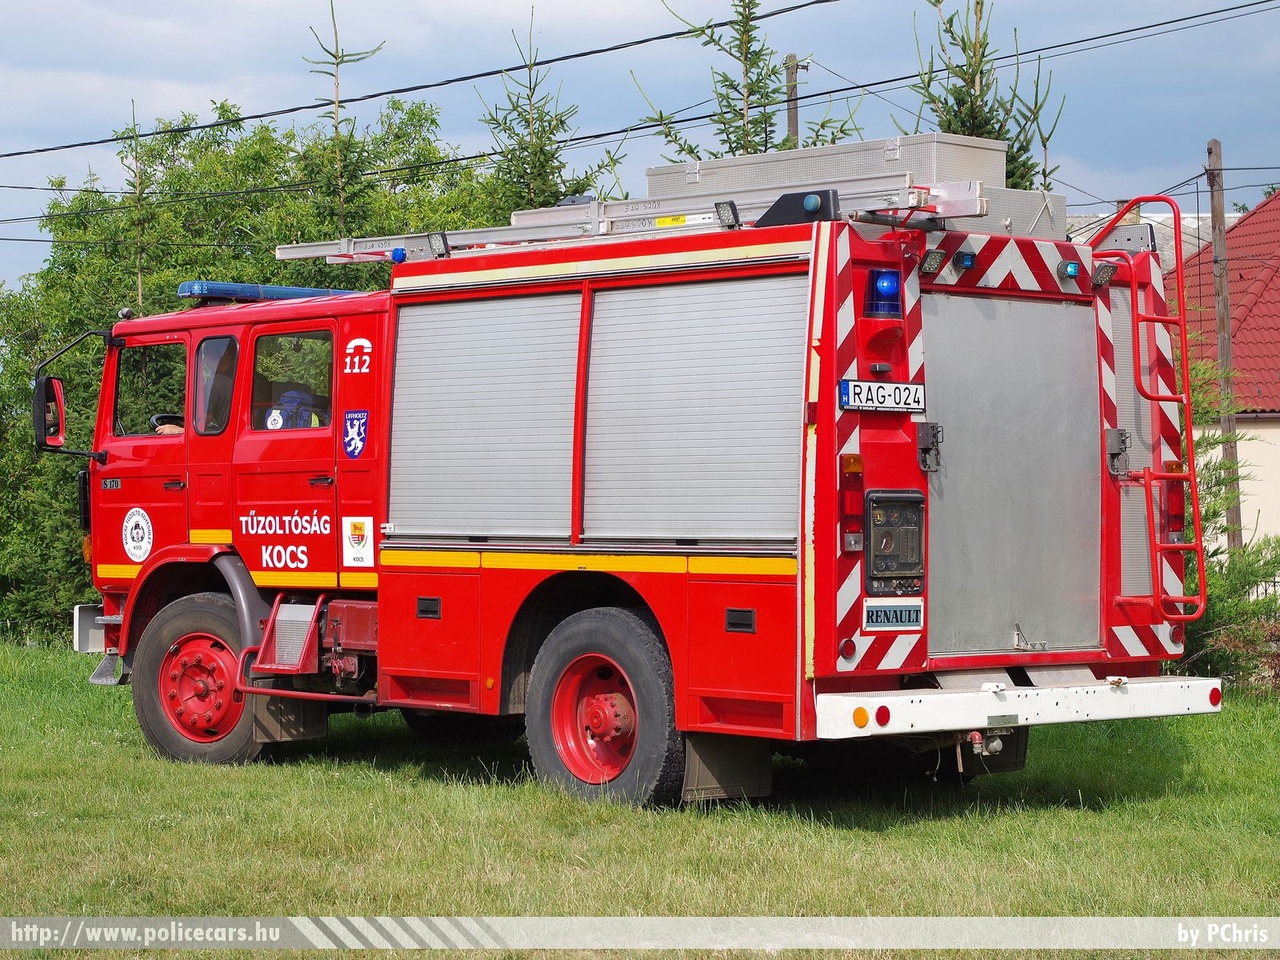 Renault S170 Camiva FPTL, Kocsi Önkéntes Tűzoltó Egyesület, fotó: PChris
Keywords: ÖTE magyar Magyarország tûzoltó tûzoltóautó tûzoltóság Hungary hungarian fire firetruck RAG-024